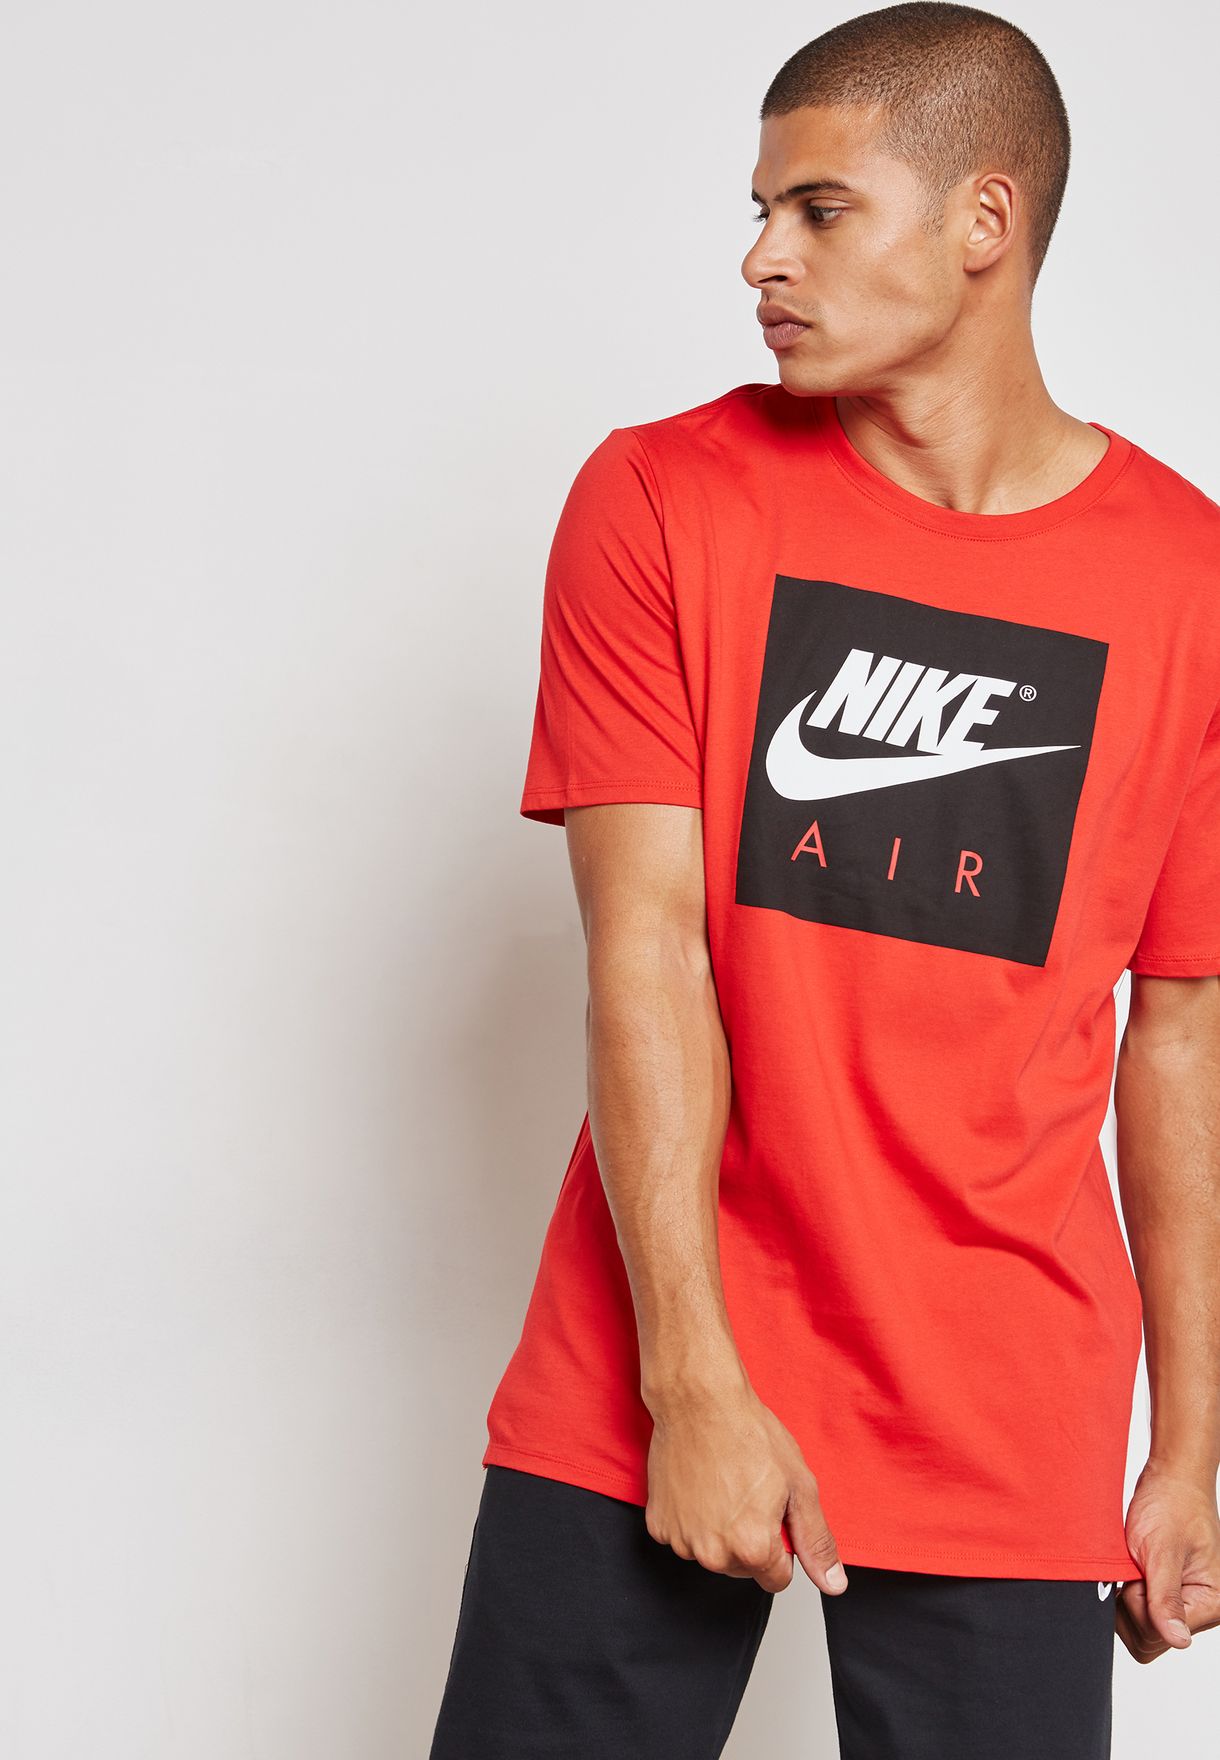 red nike air shirt